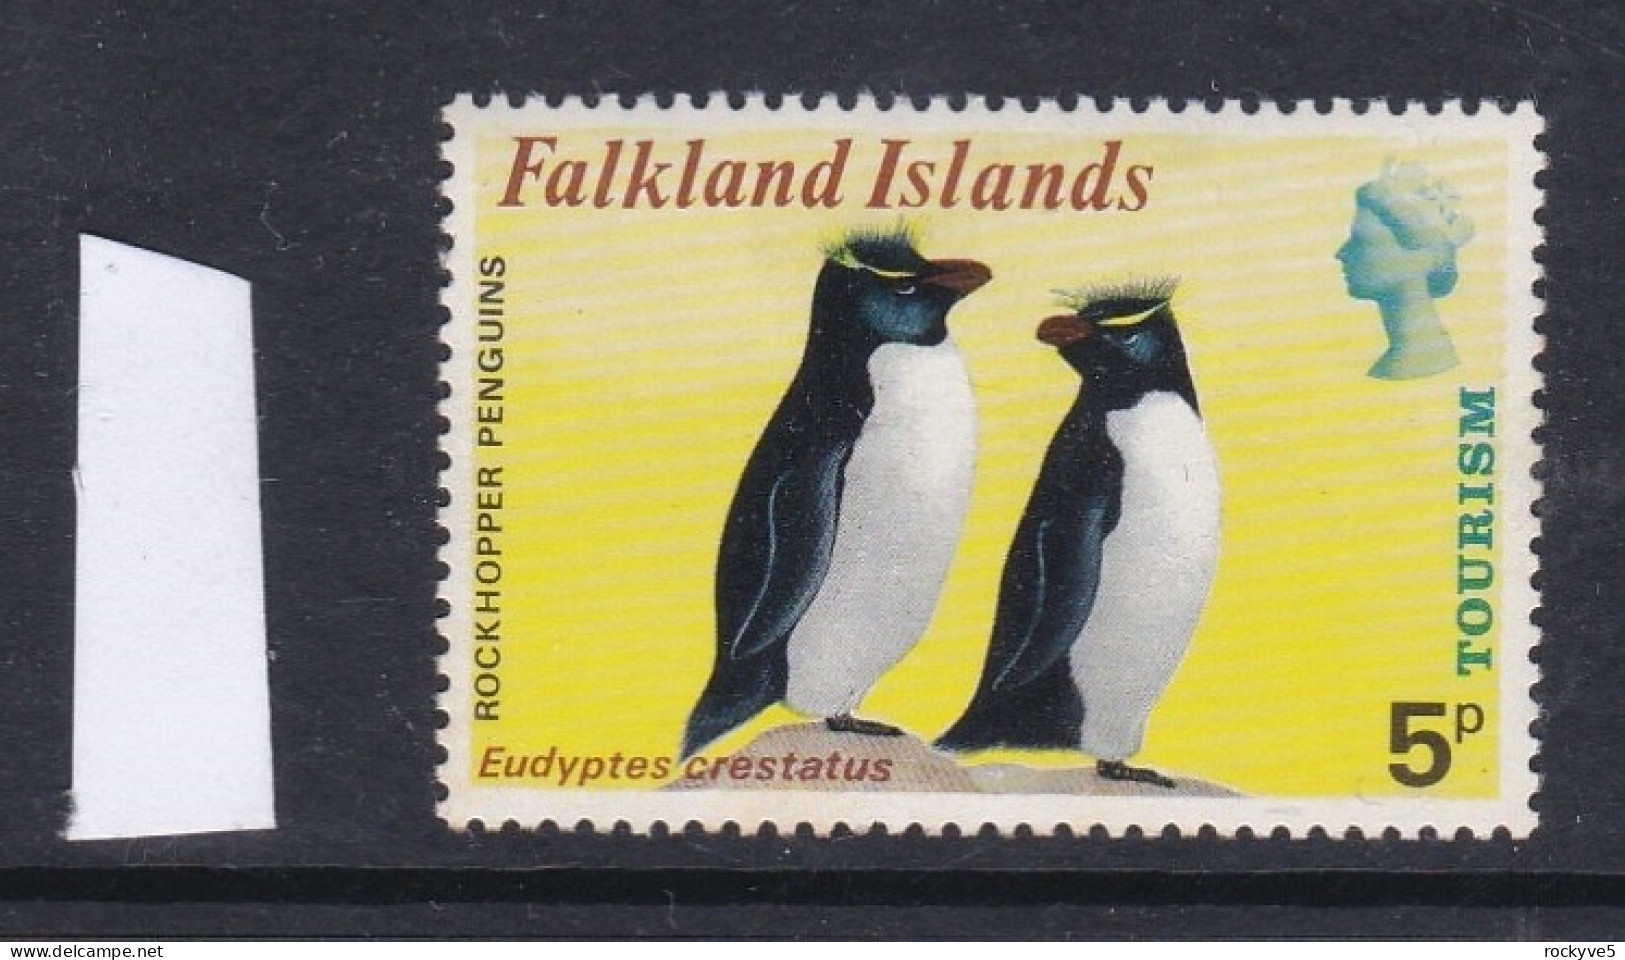 Falkland Islands 1974 Tourism 5p MNH CV £8.00 SP £2.99 - Islas Malvinas